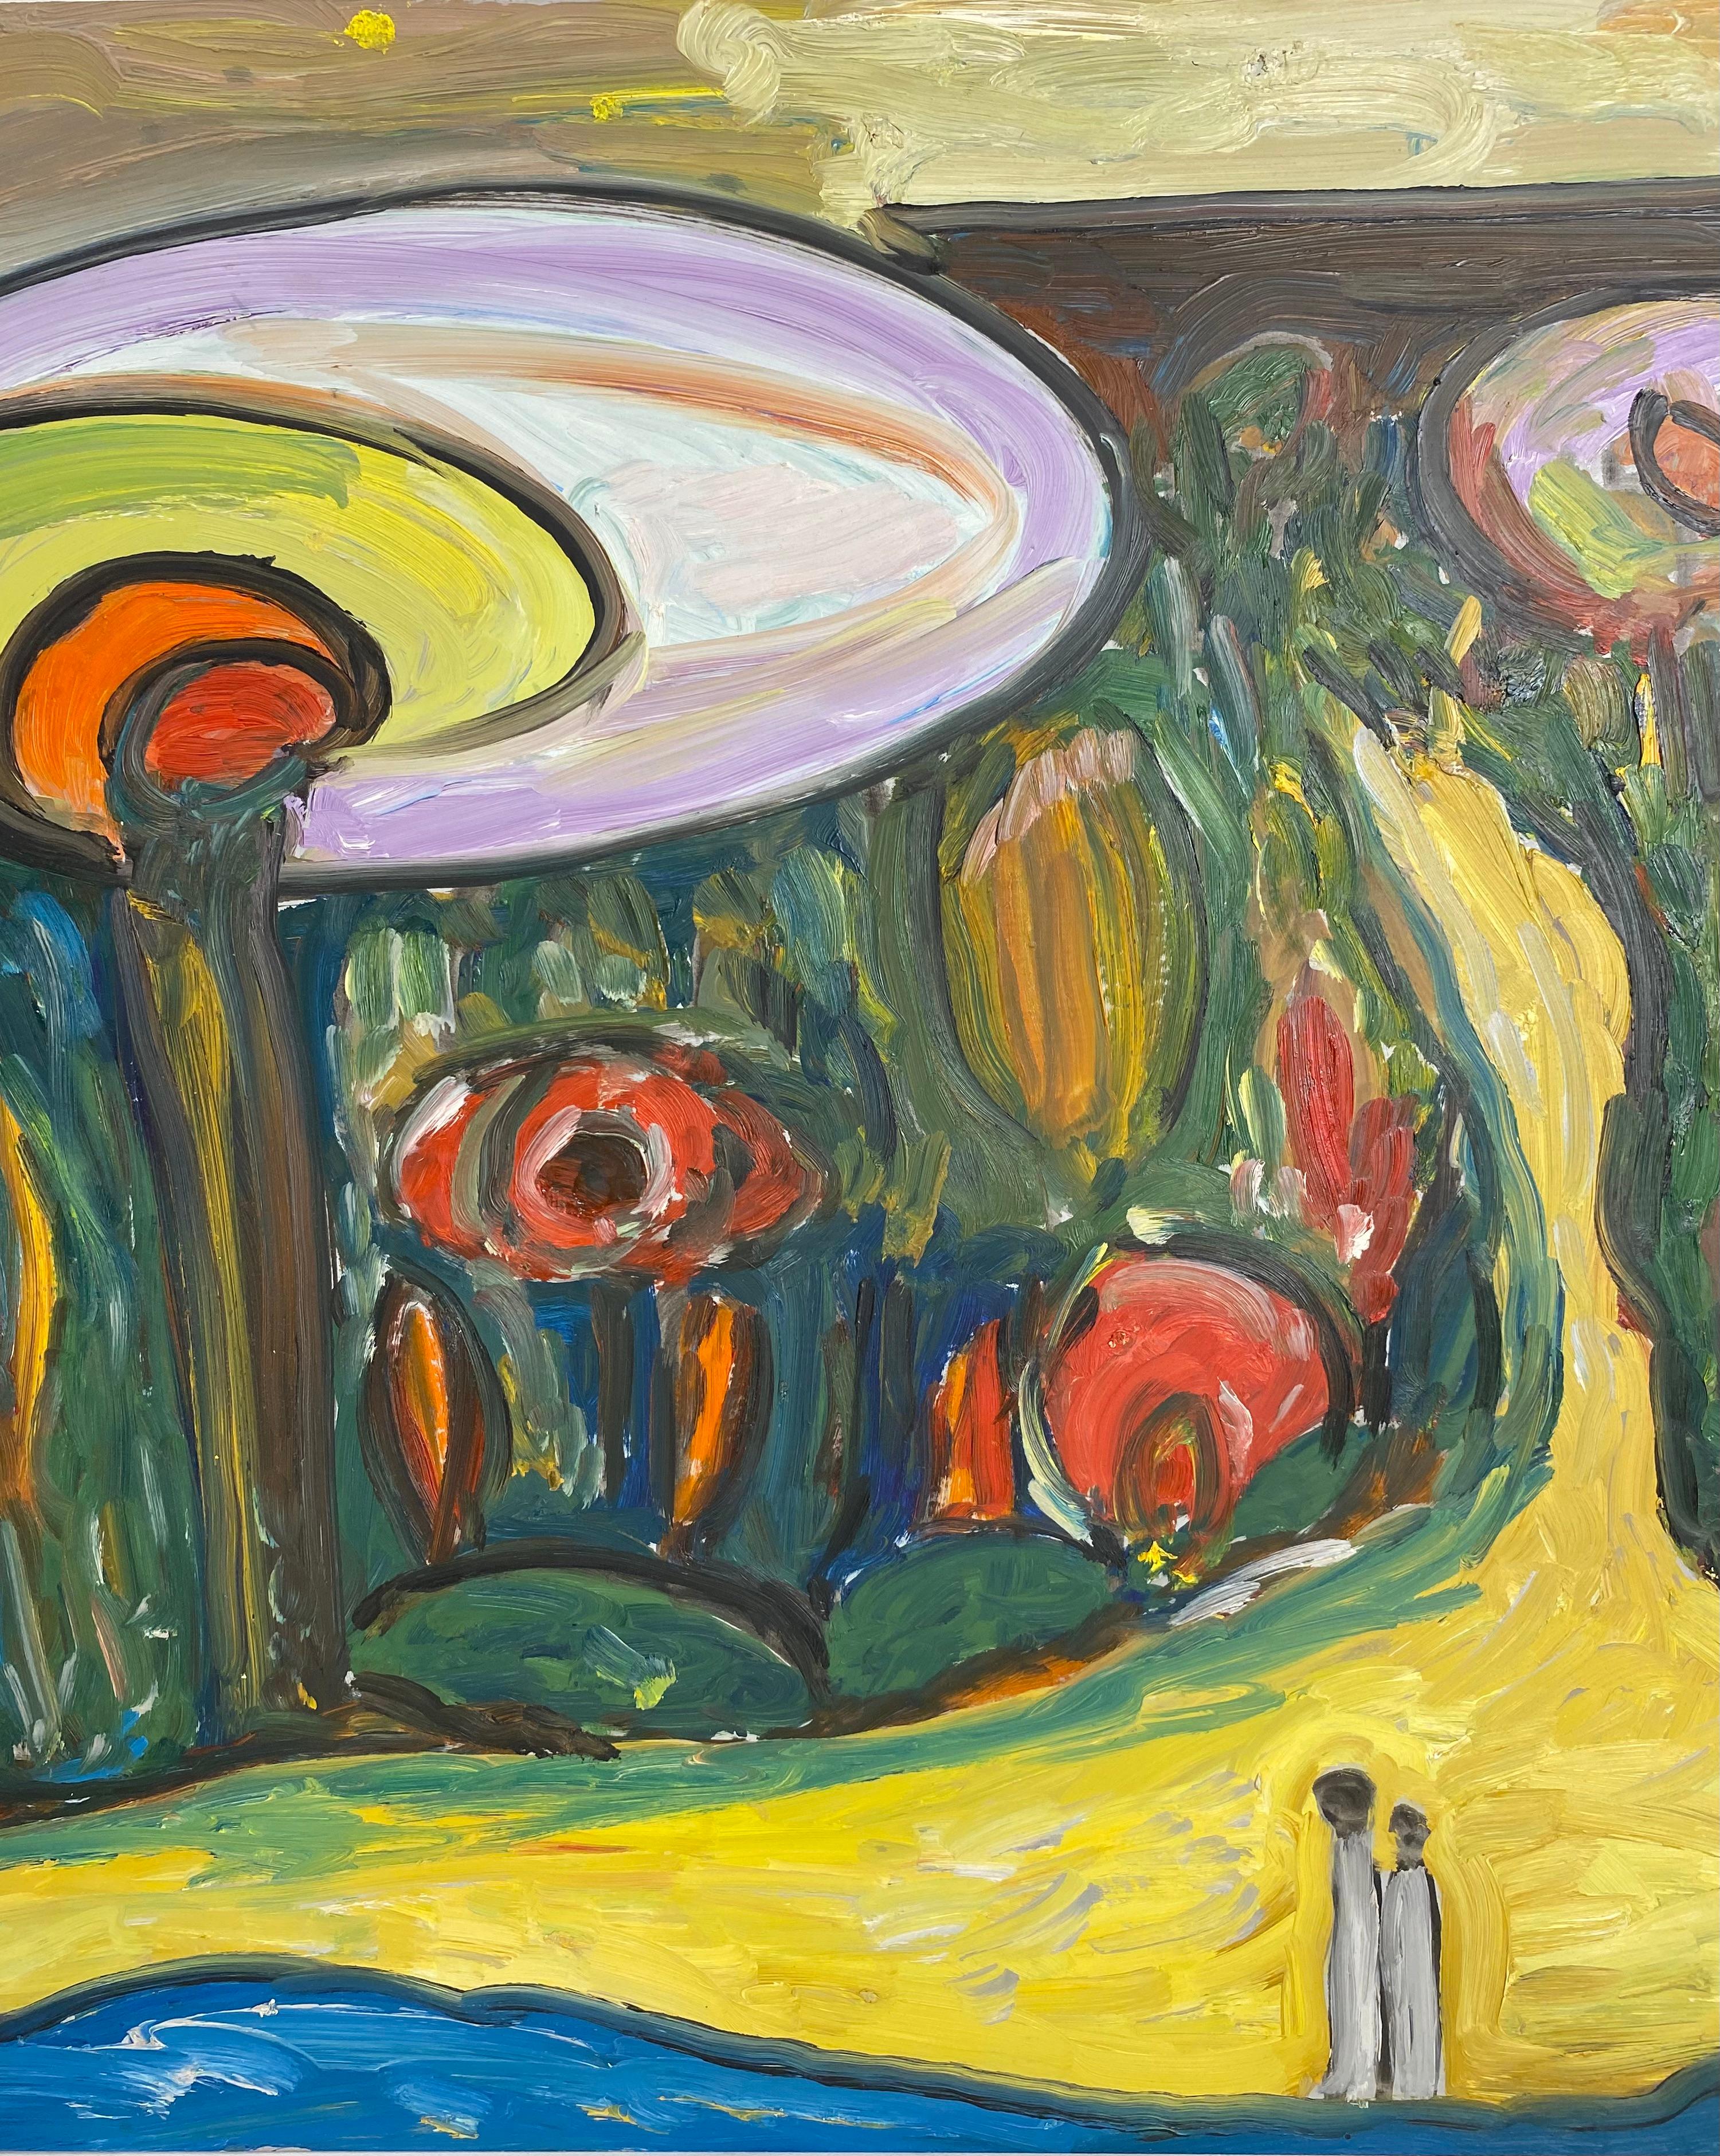 Ein sehr dekoratives Kunstwerk der Künstlerin Jo Patch. 

Jo Patch wurde am 13. Januar 1937 in Opprebais geboren. Er war vor allem in Belgien tätig, obwohl viele seiner Werke in der ganzen Welt ausgestellt wurden. 
Er war ein Schüler von LEEMANS und